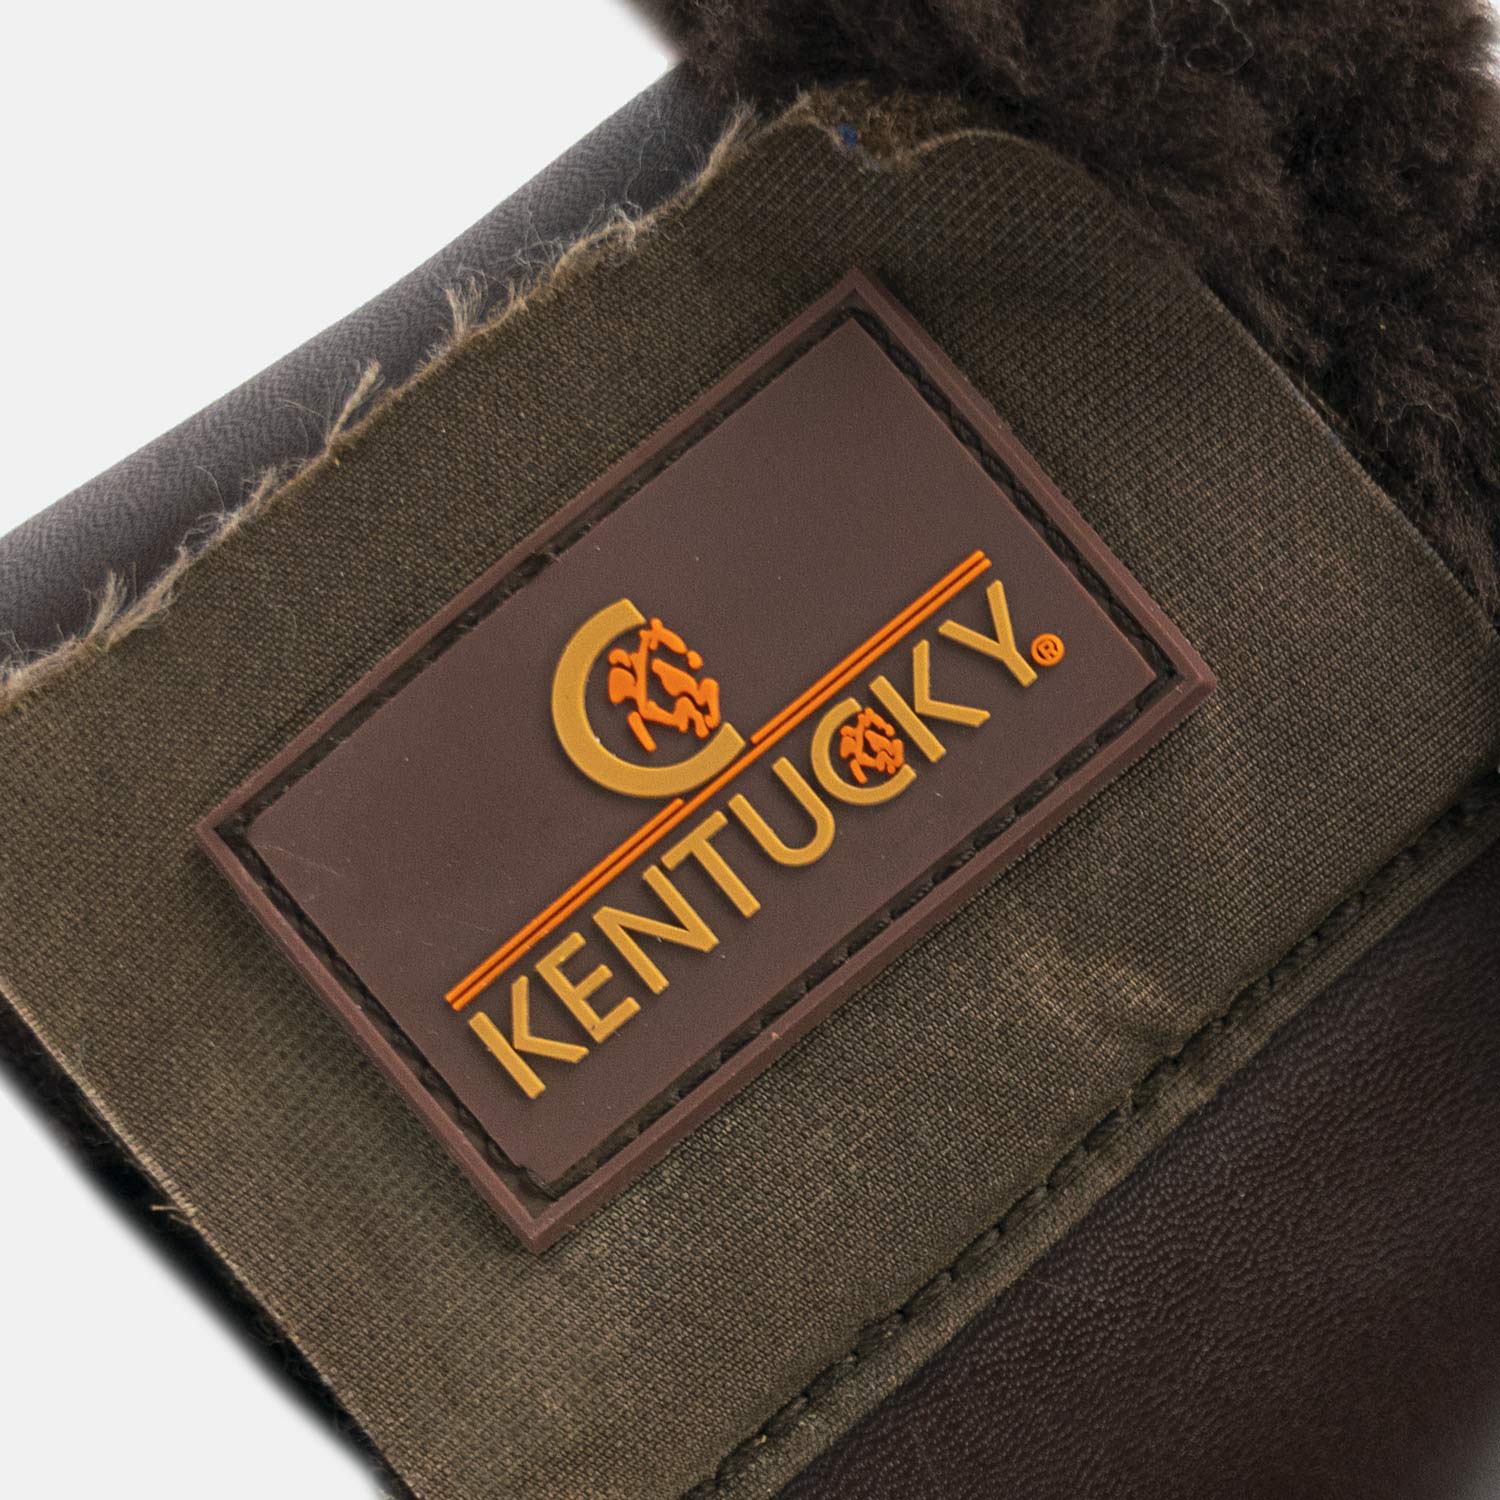 Kentucky Horsewear - Cloches chevaux cuir et mouton noir/naturel